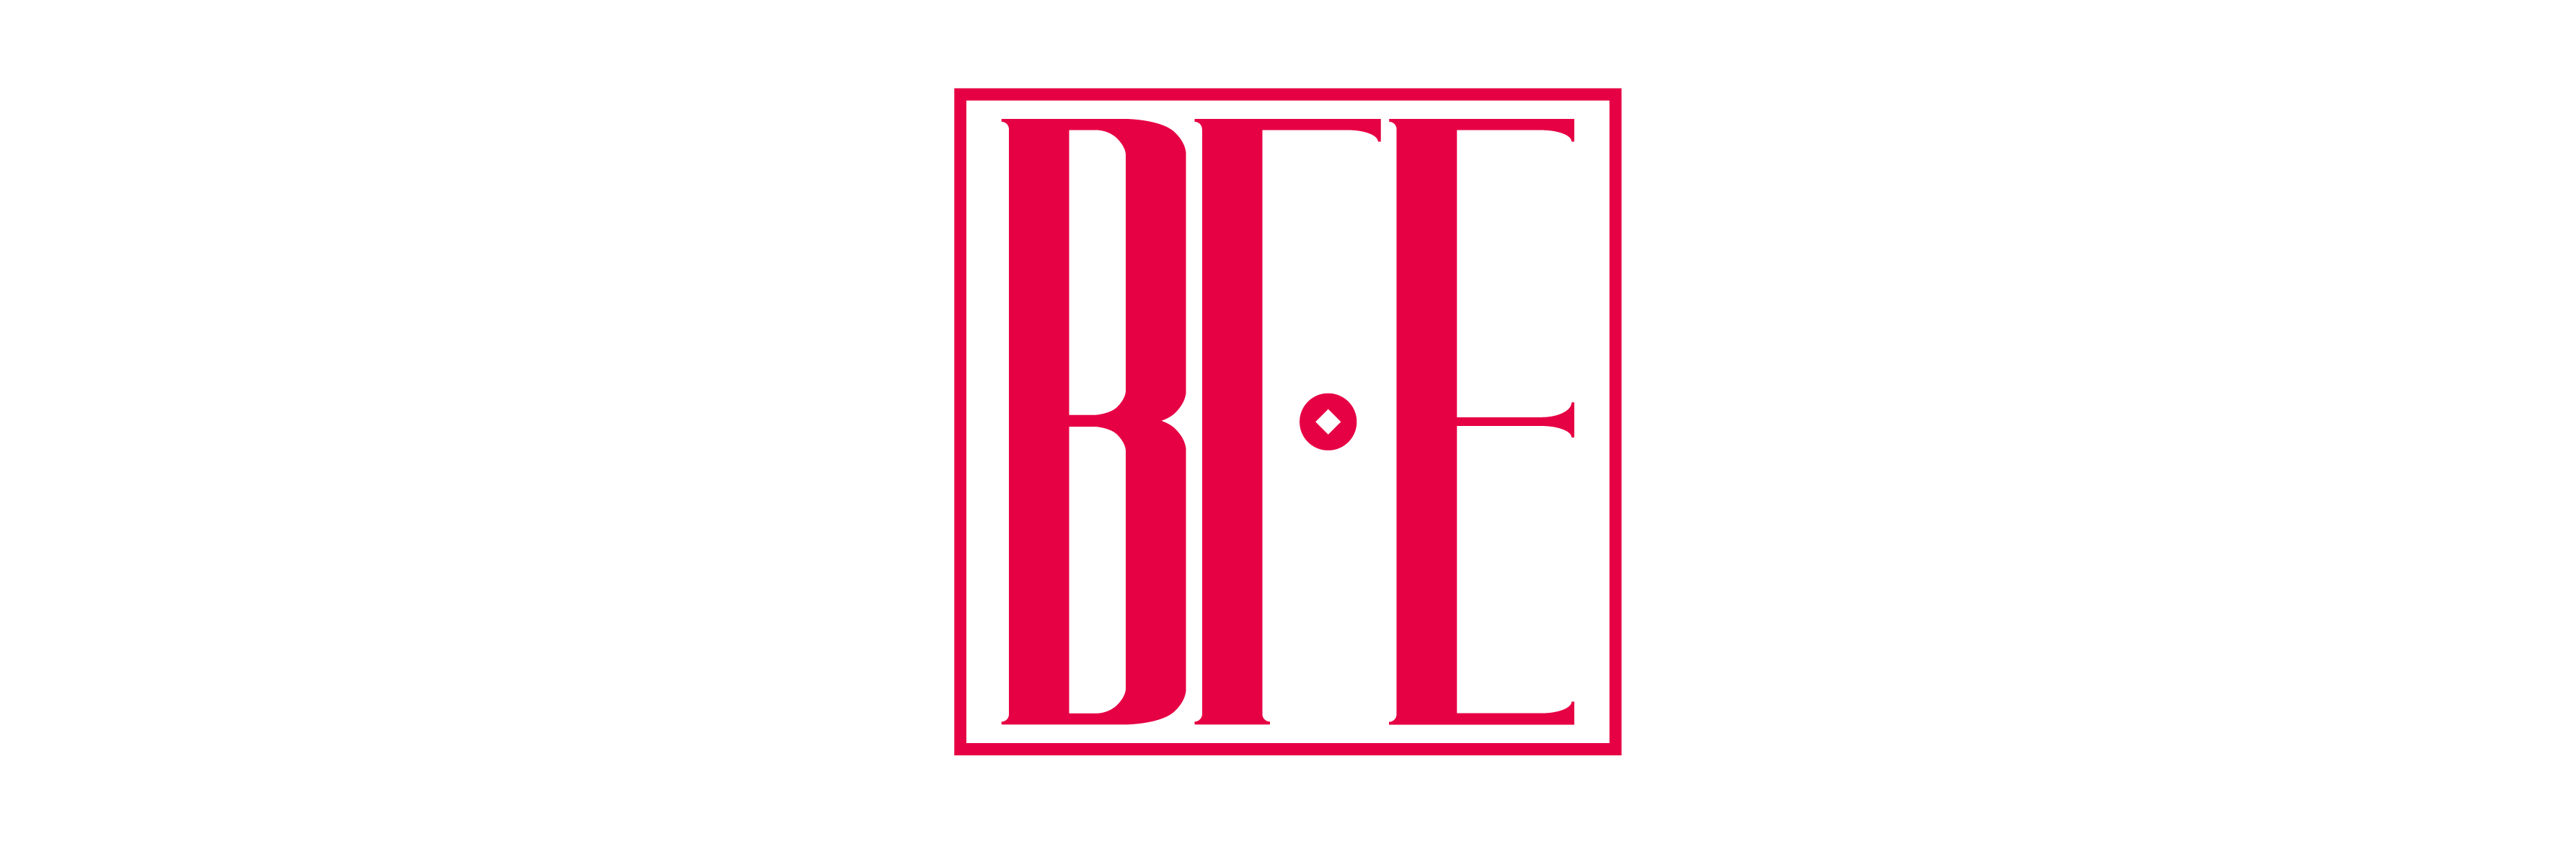 BFE花万里-餐厅设计/餐饮设计/空间设计/专业餐饮品牌设计公司